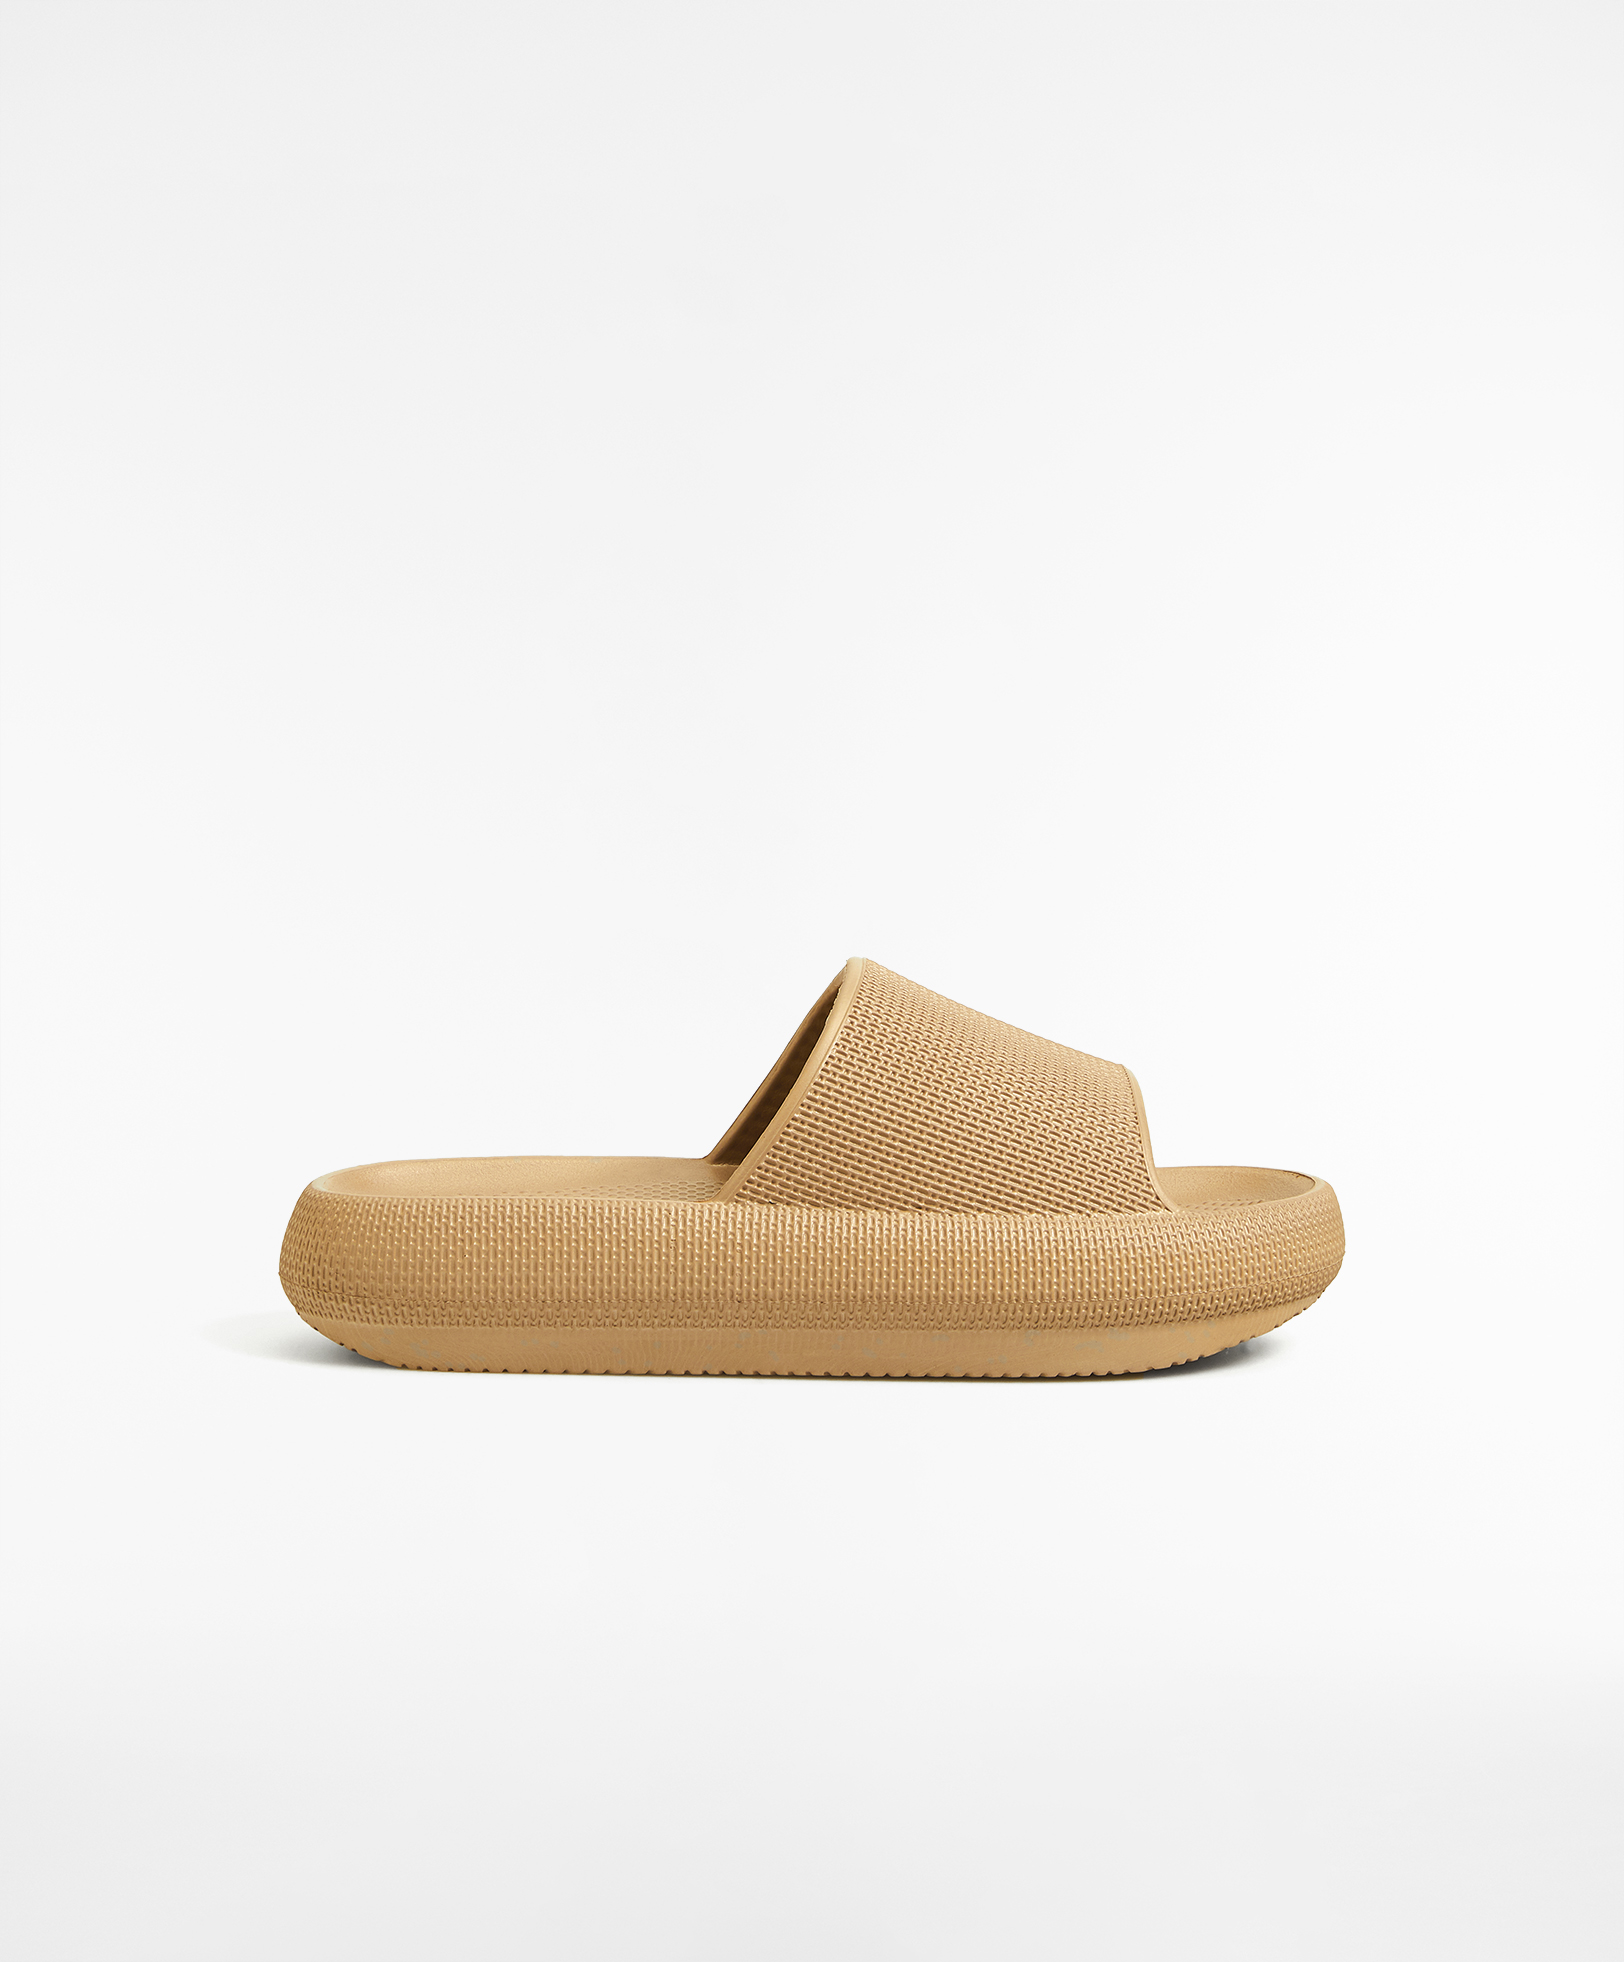 Sandales flatform